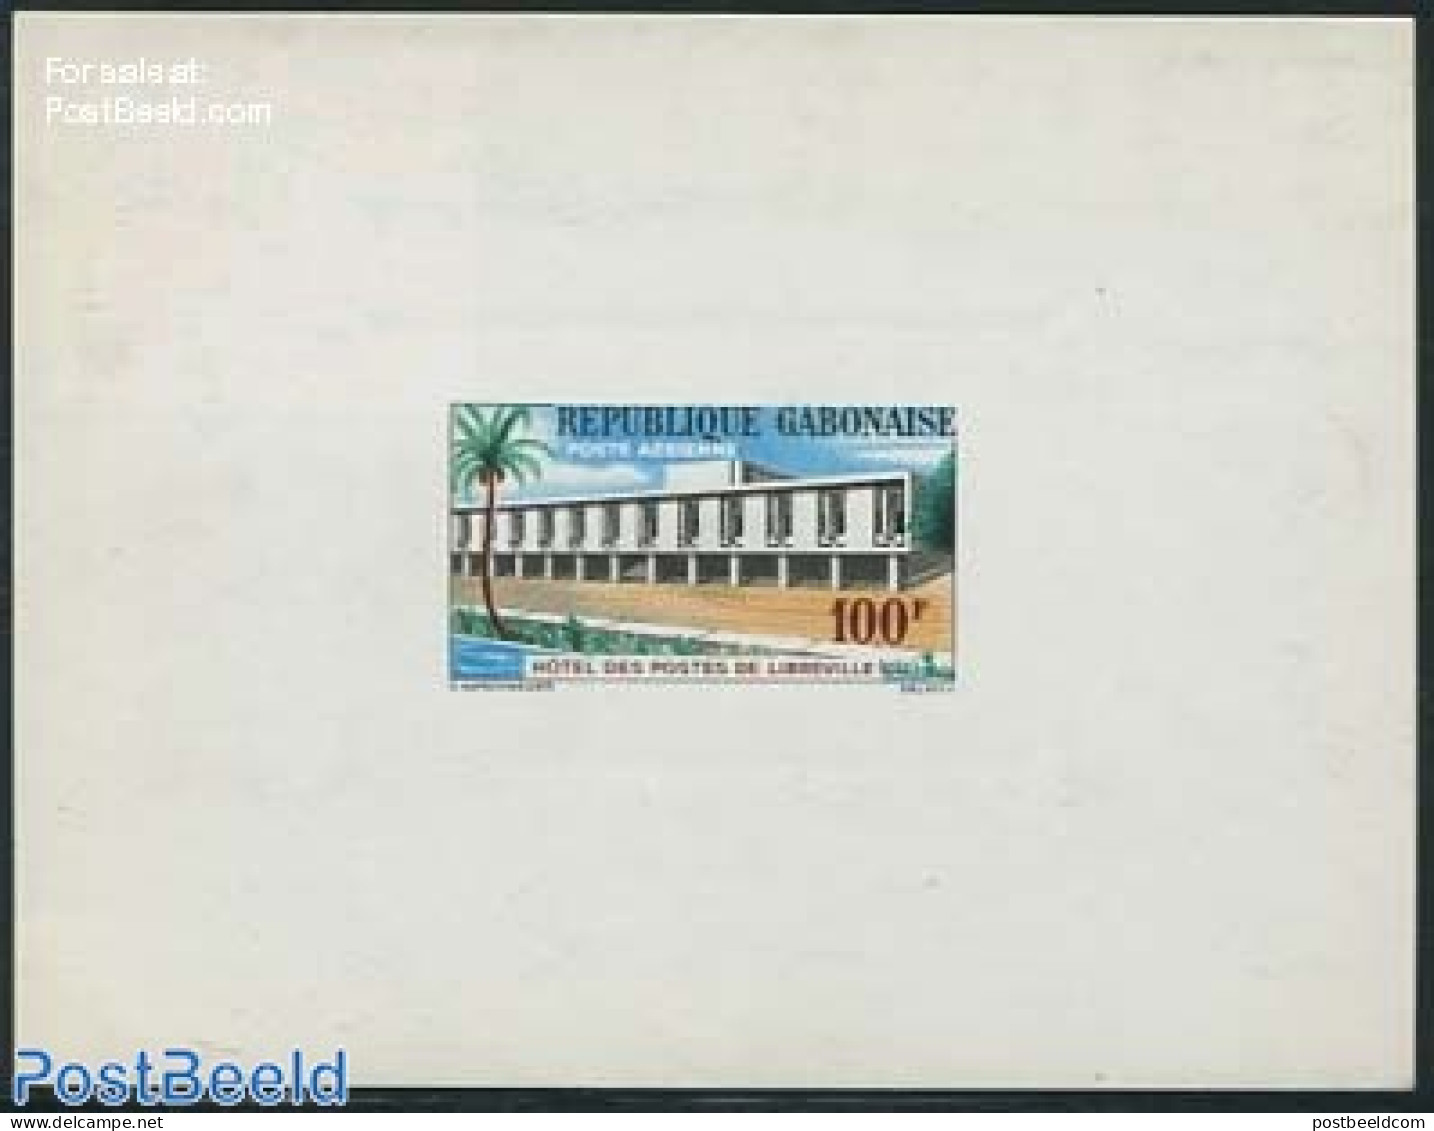 Gabon 1963 Post Office, Epreuves De Luxe, Mint NH, Post - Ongebruikt